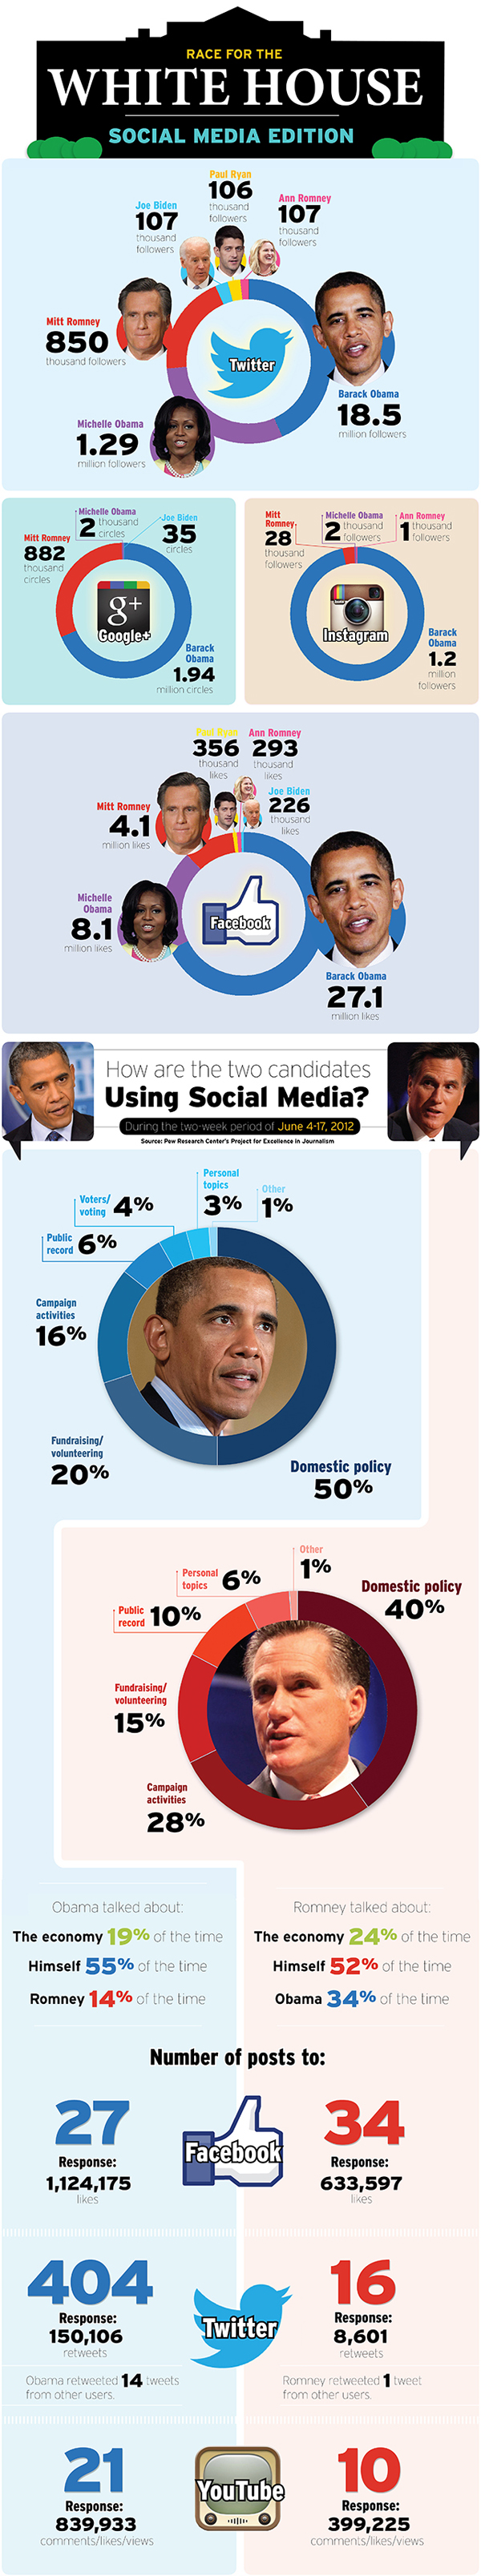 La campagna presidenziale 2012 sui social media